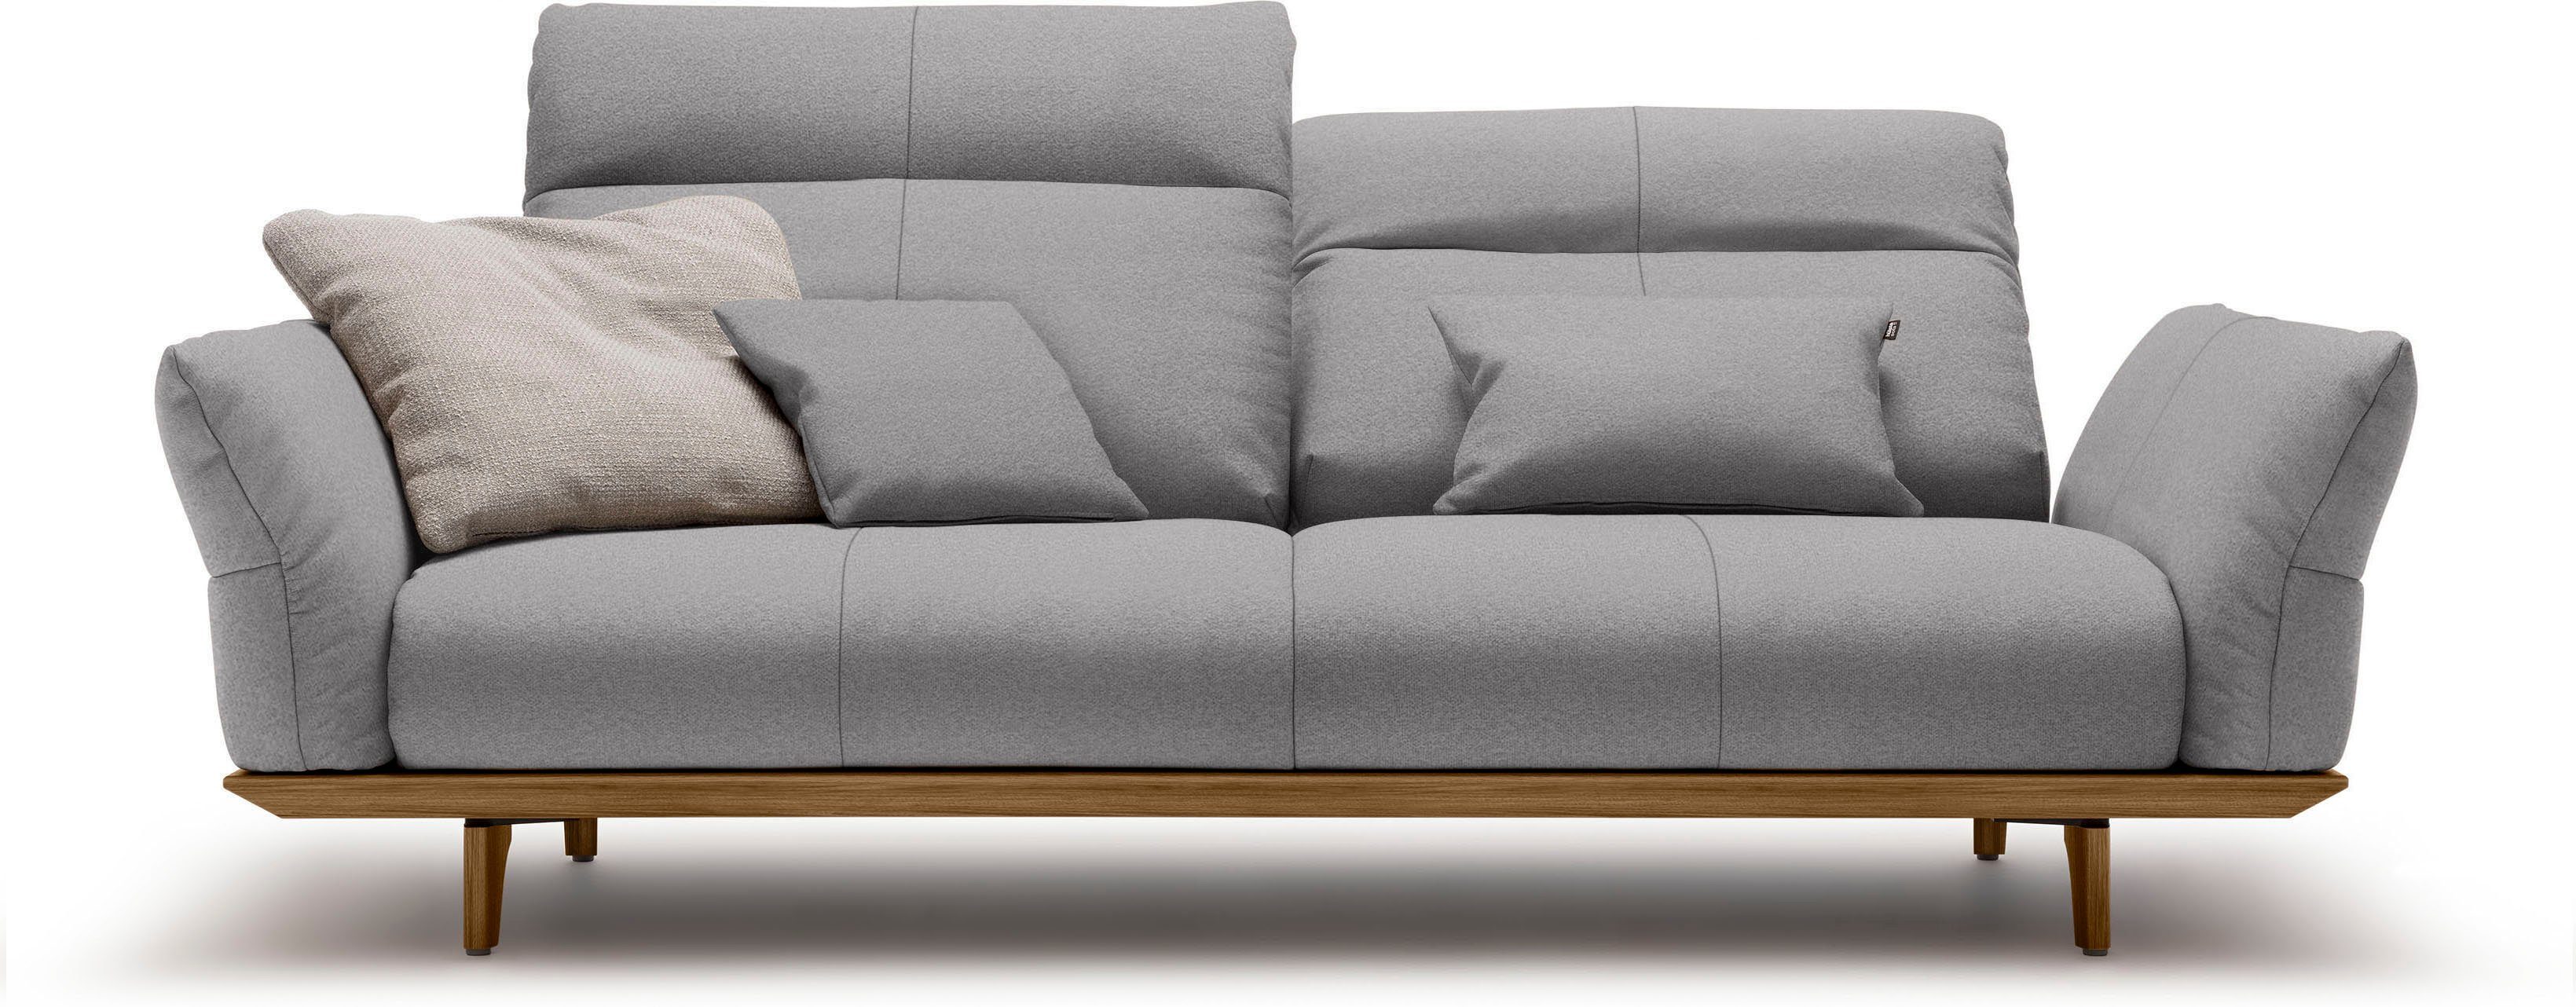 hülsta sofa 3-Sitzer hs.460, Sockel in Nussbaum, Füße Nussbaum, Breite 208 cm